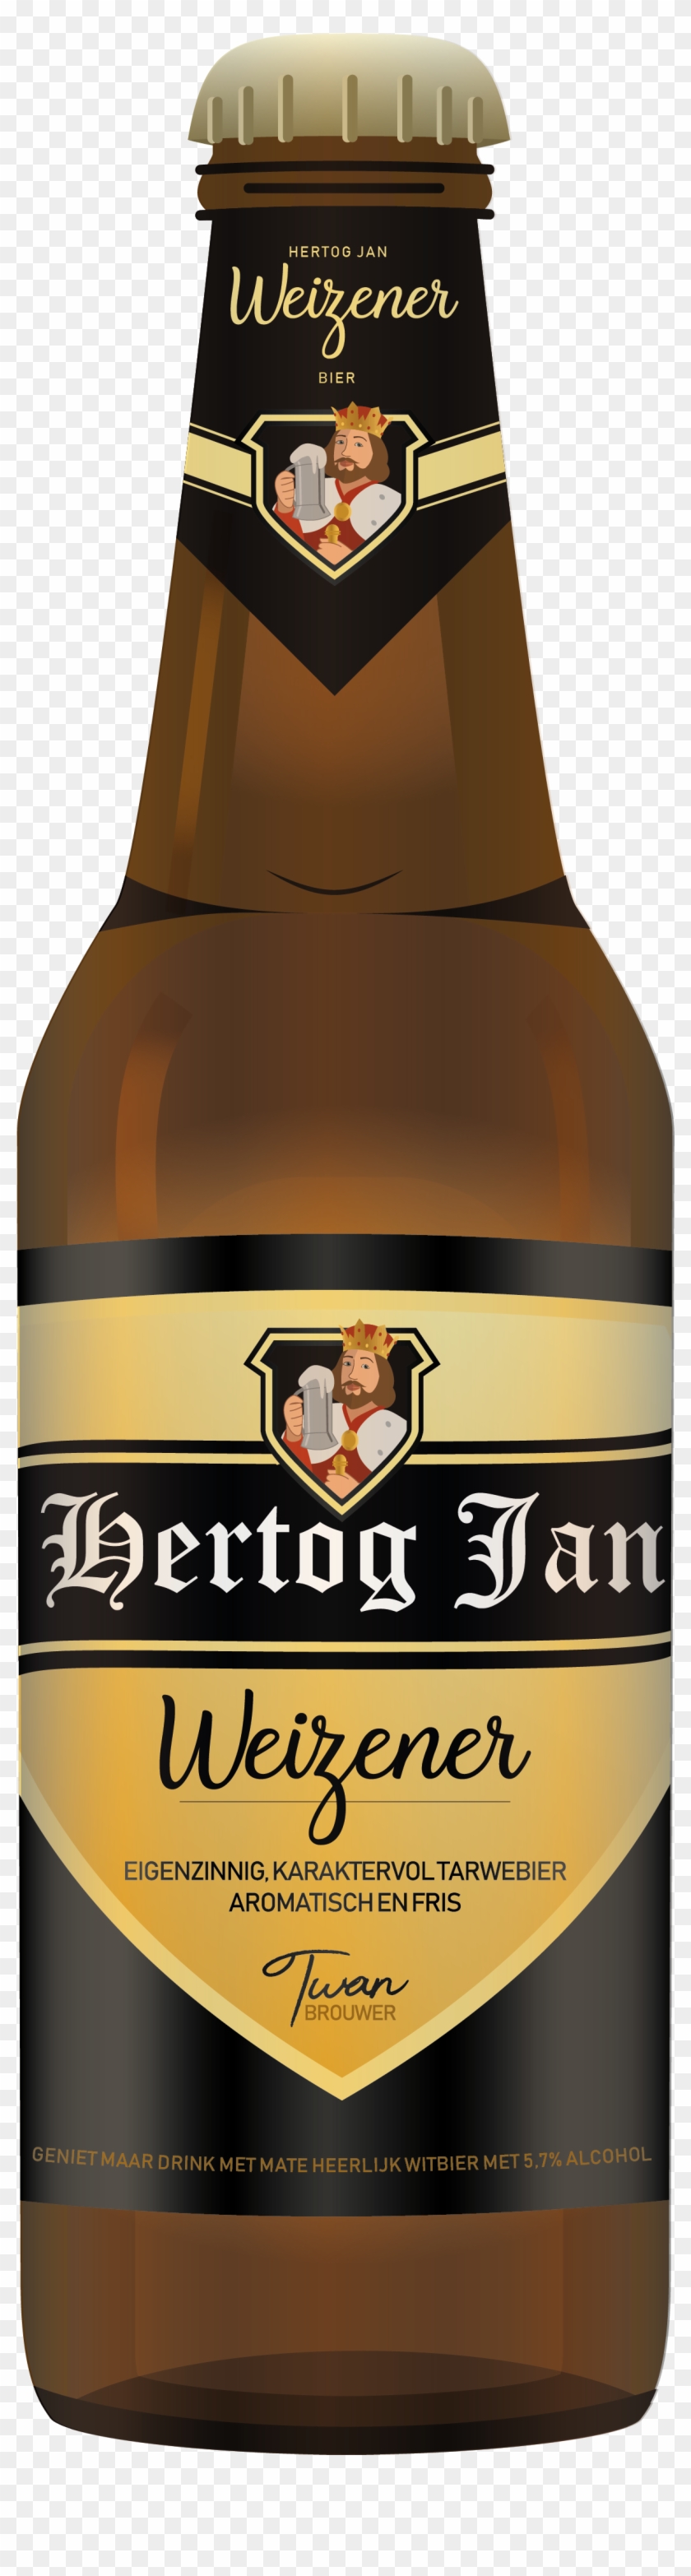 Hertog Jan Corona Beer, Beer Bottle - Wheat Beer Clipart #2550950